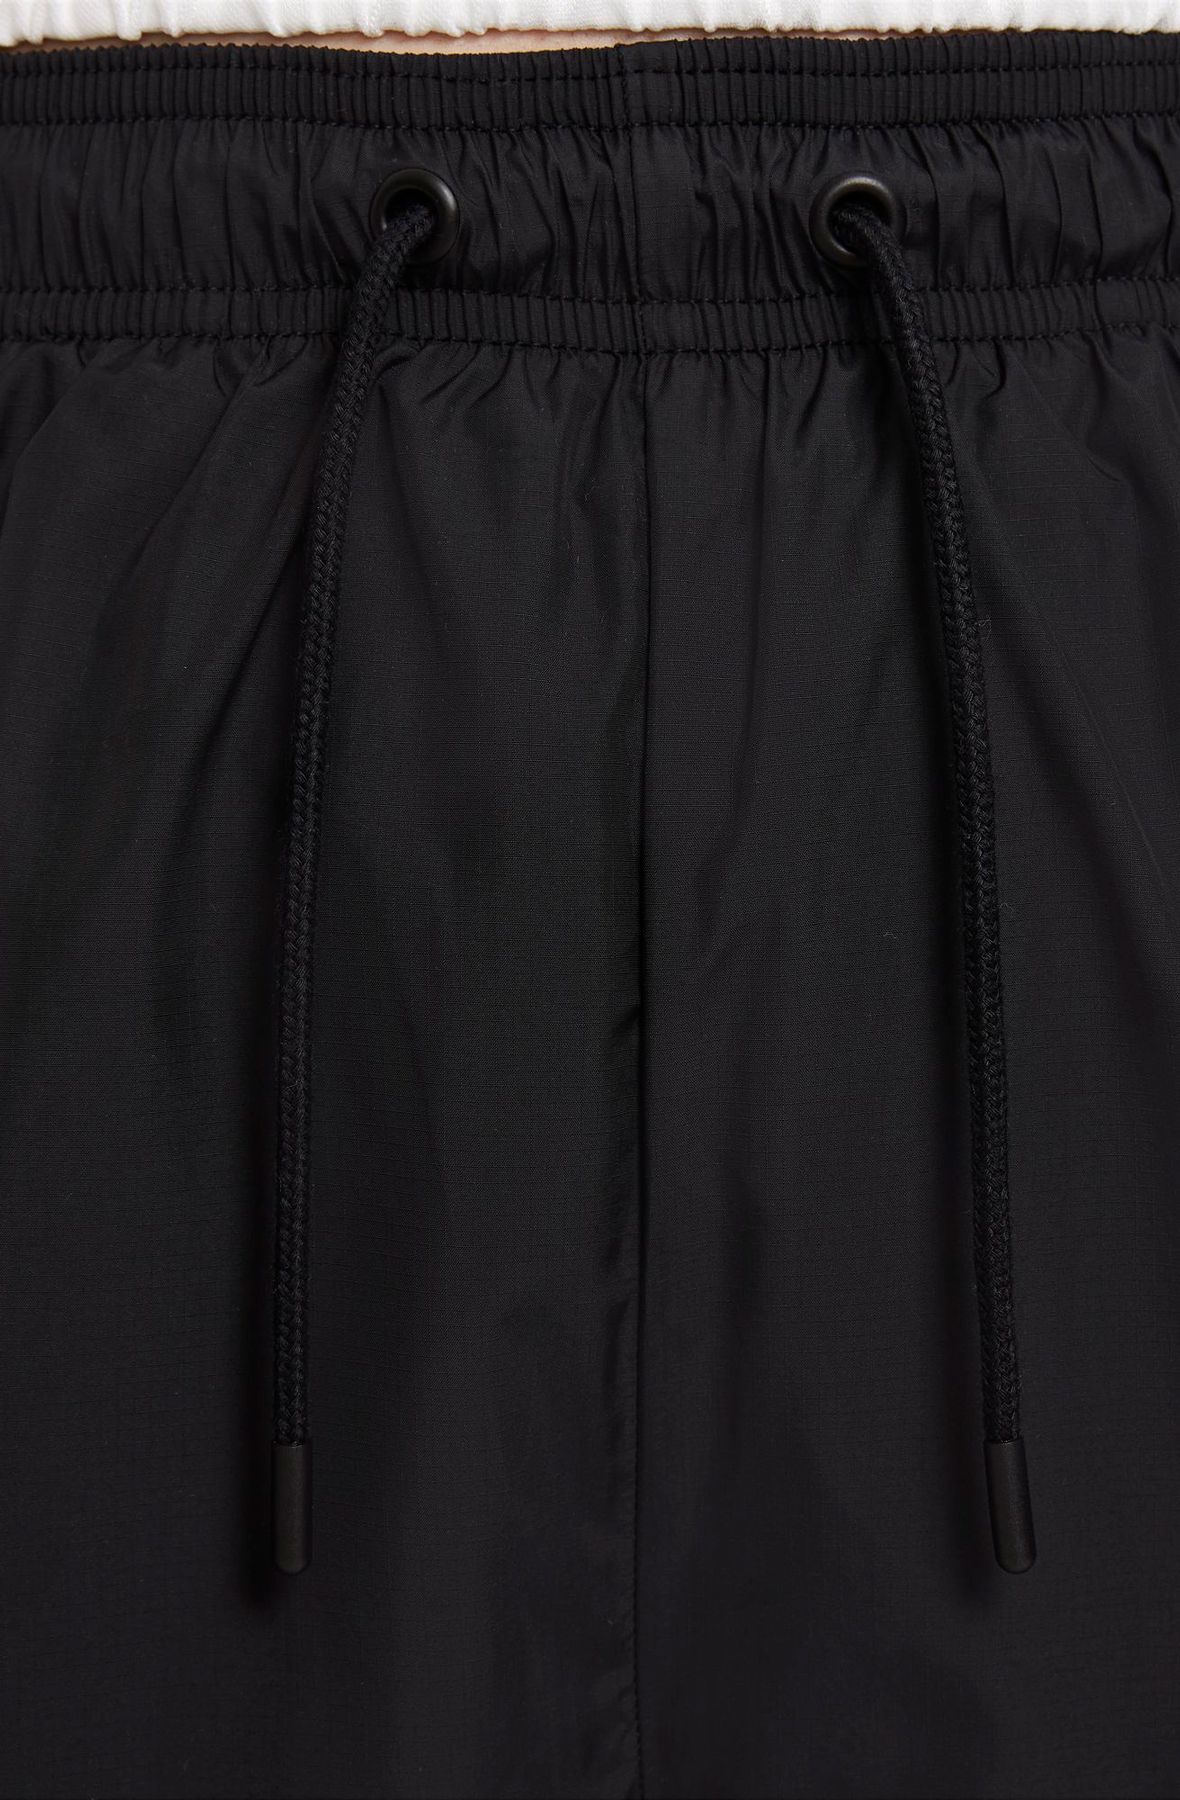 NIKE Sportswear Shorts CZ9741 010 - Shiekh